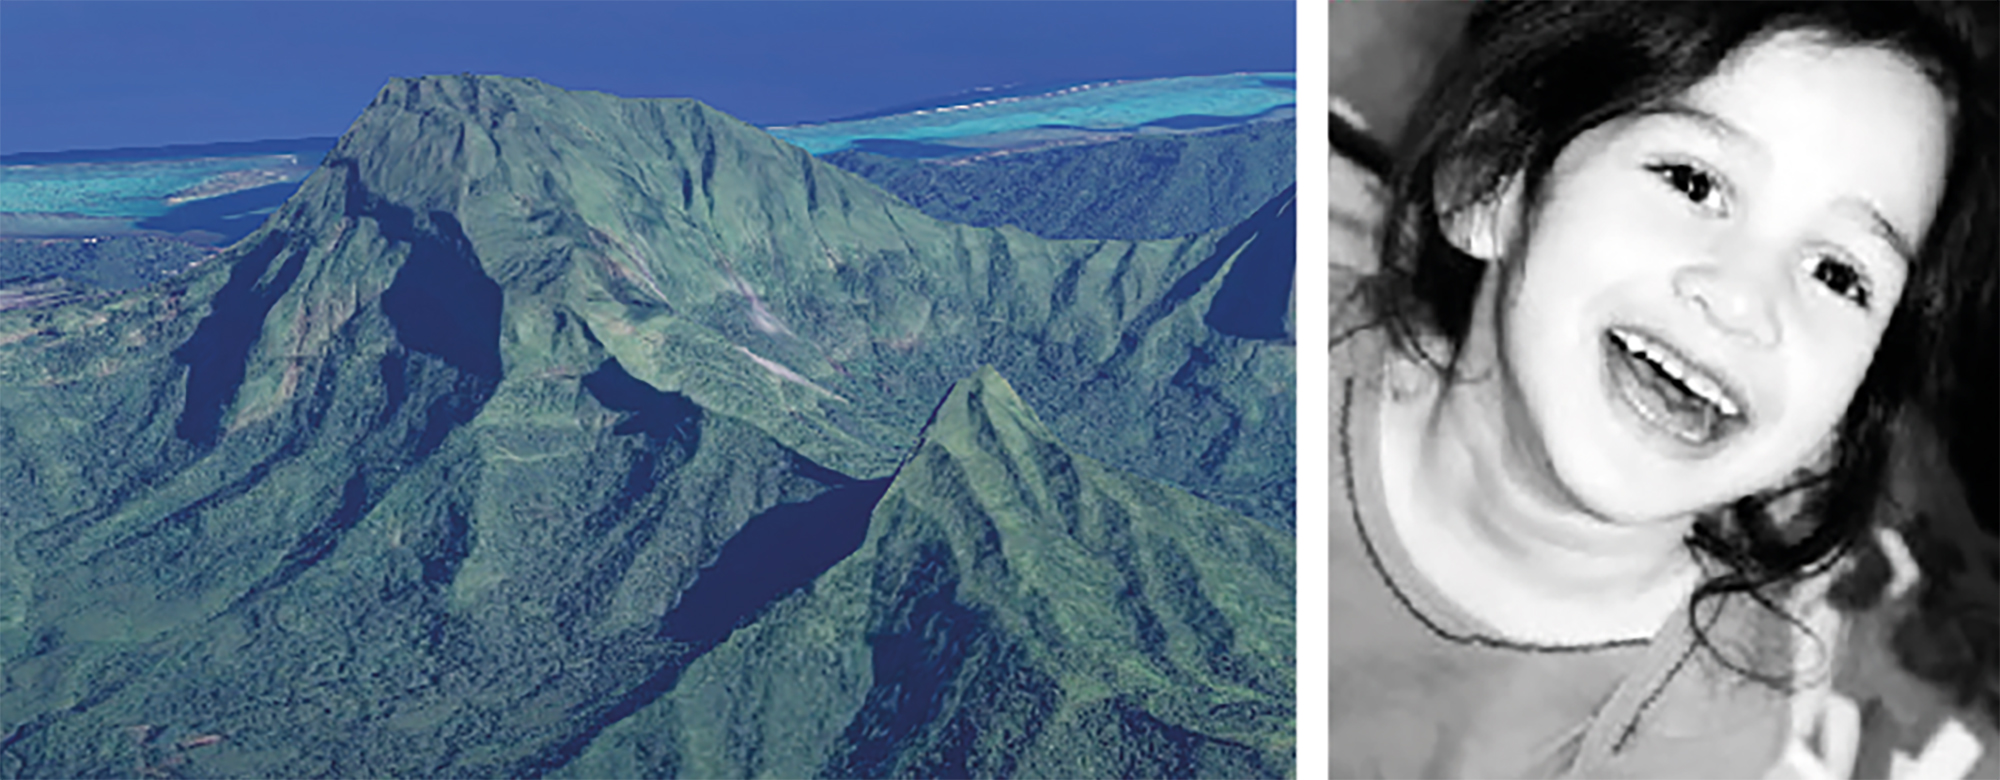 Le 22 août, les membres de l’association porteront la petite Tehani au sommet du Mont Temehani, à Raiatea.